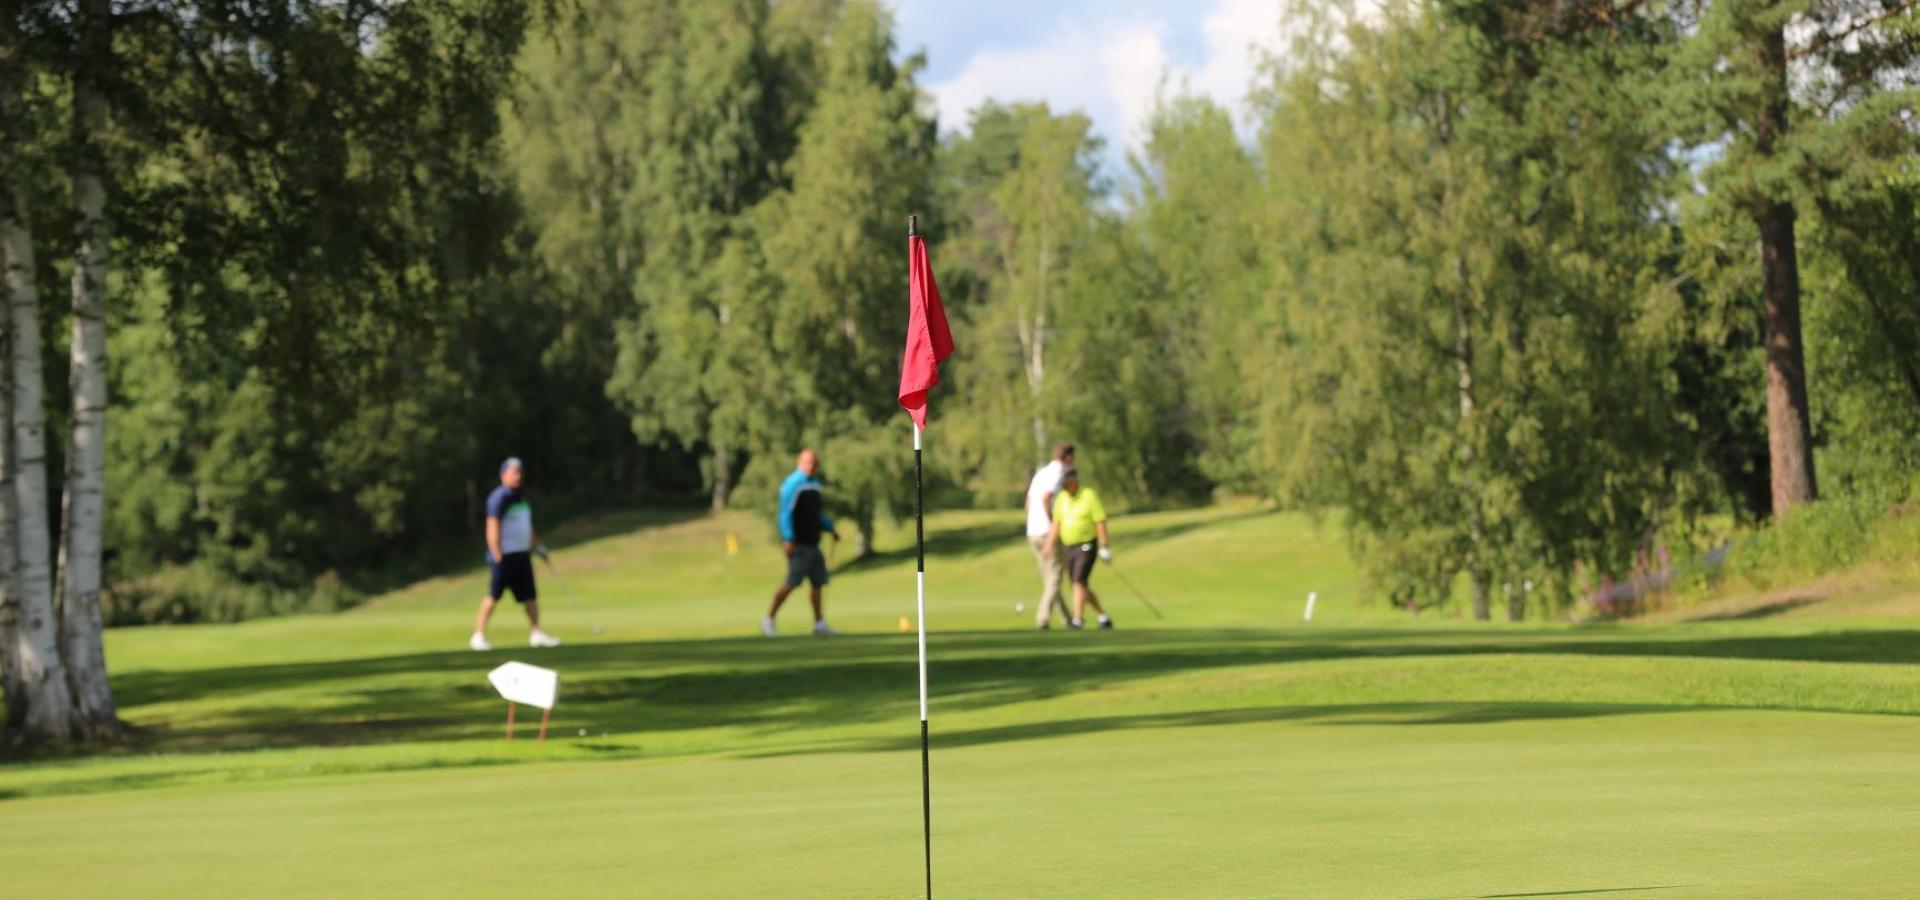 Det finns flera golfbanor att välja mellan för den som vill spela golf i Rättvik.